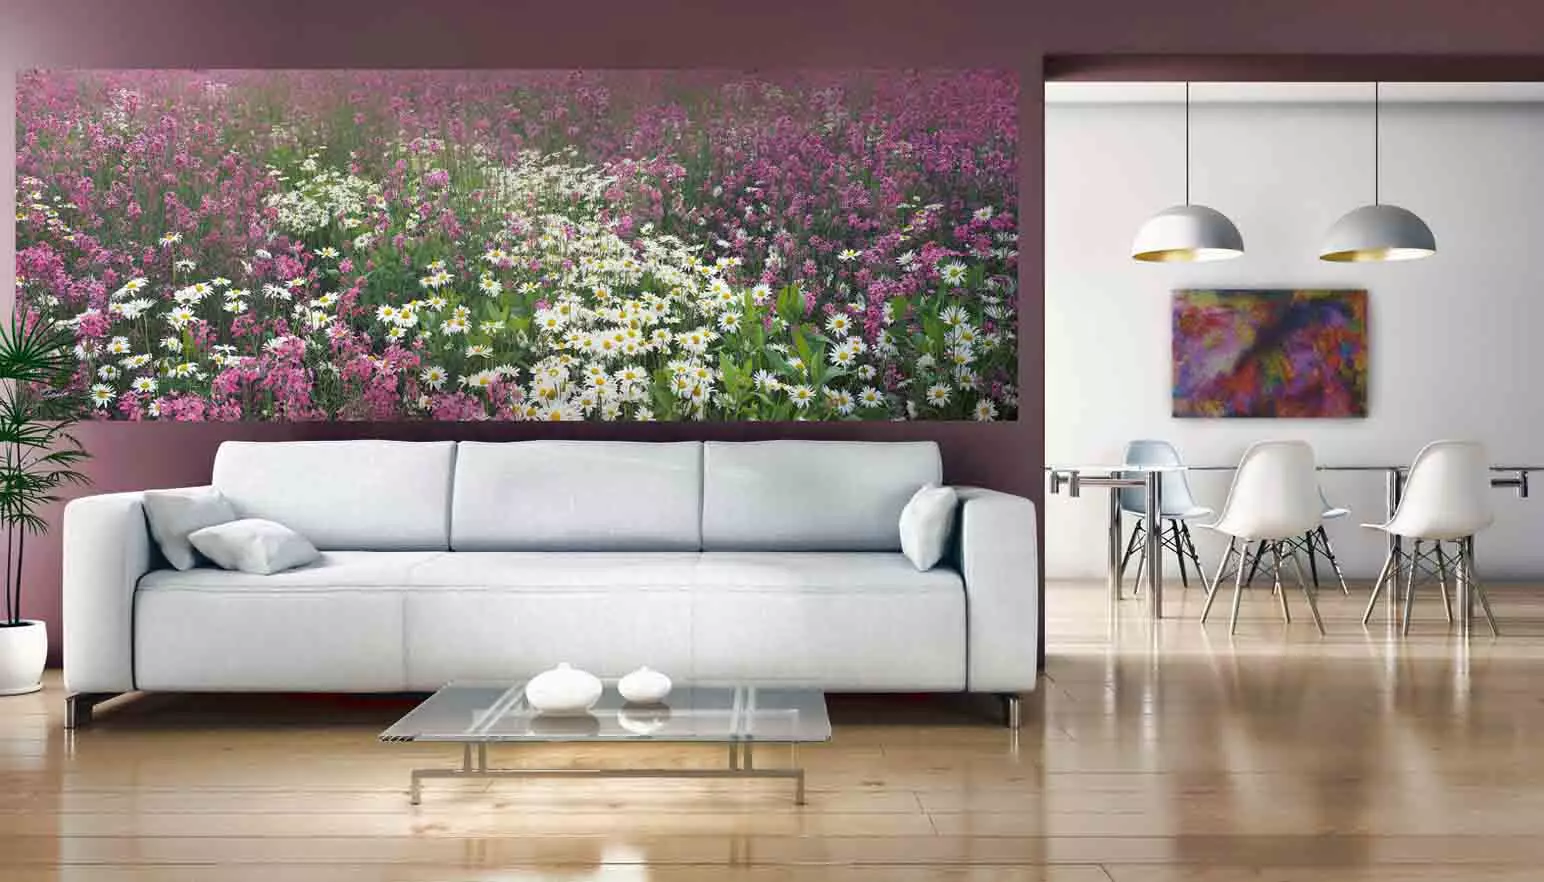 دیوار دیواری به سالن (111 عکس): طراحی تصویر زمینه عکس با گل رز در داخل اتاق نشیمن، انتخاب تصاویر پس زمینه، گسترش فضای، بر روی دیوار بالای مبل و در مکان های دیگر 21225_3